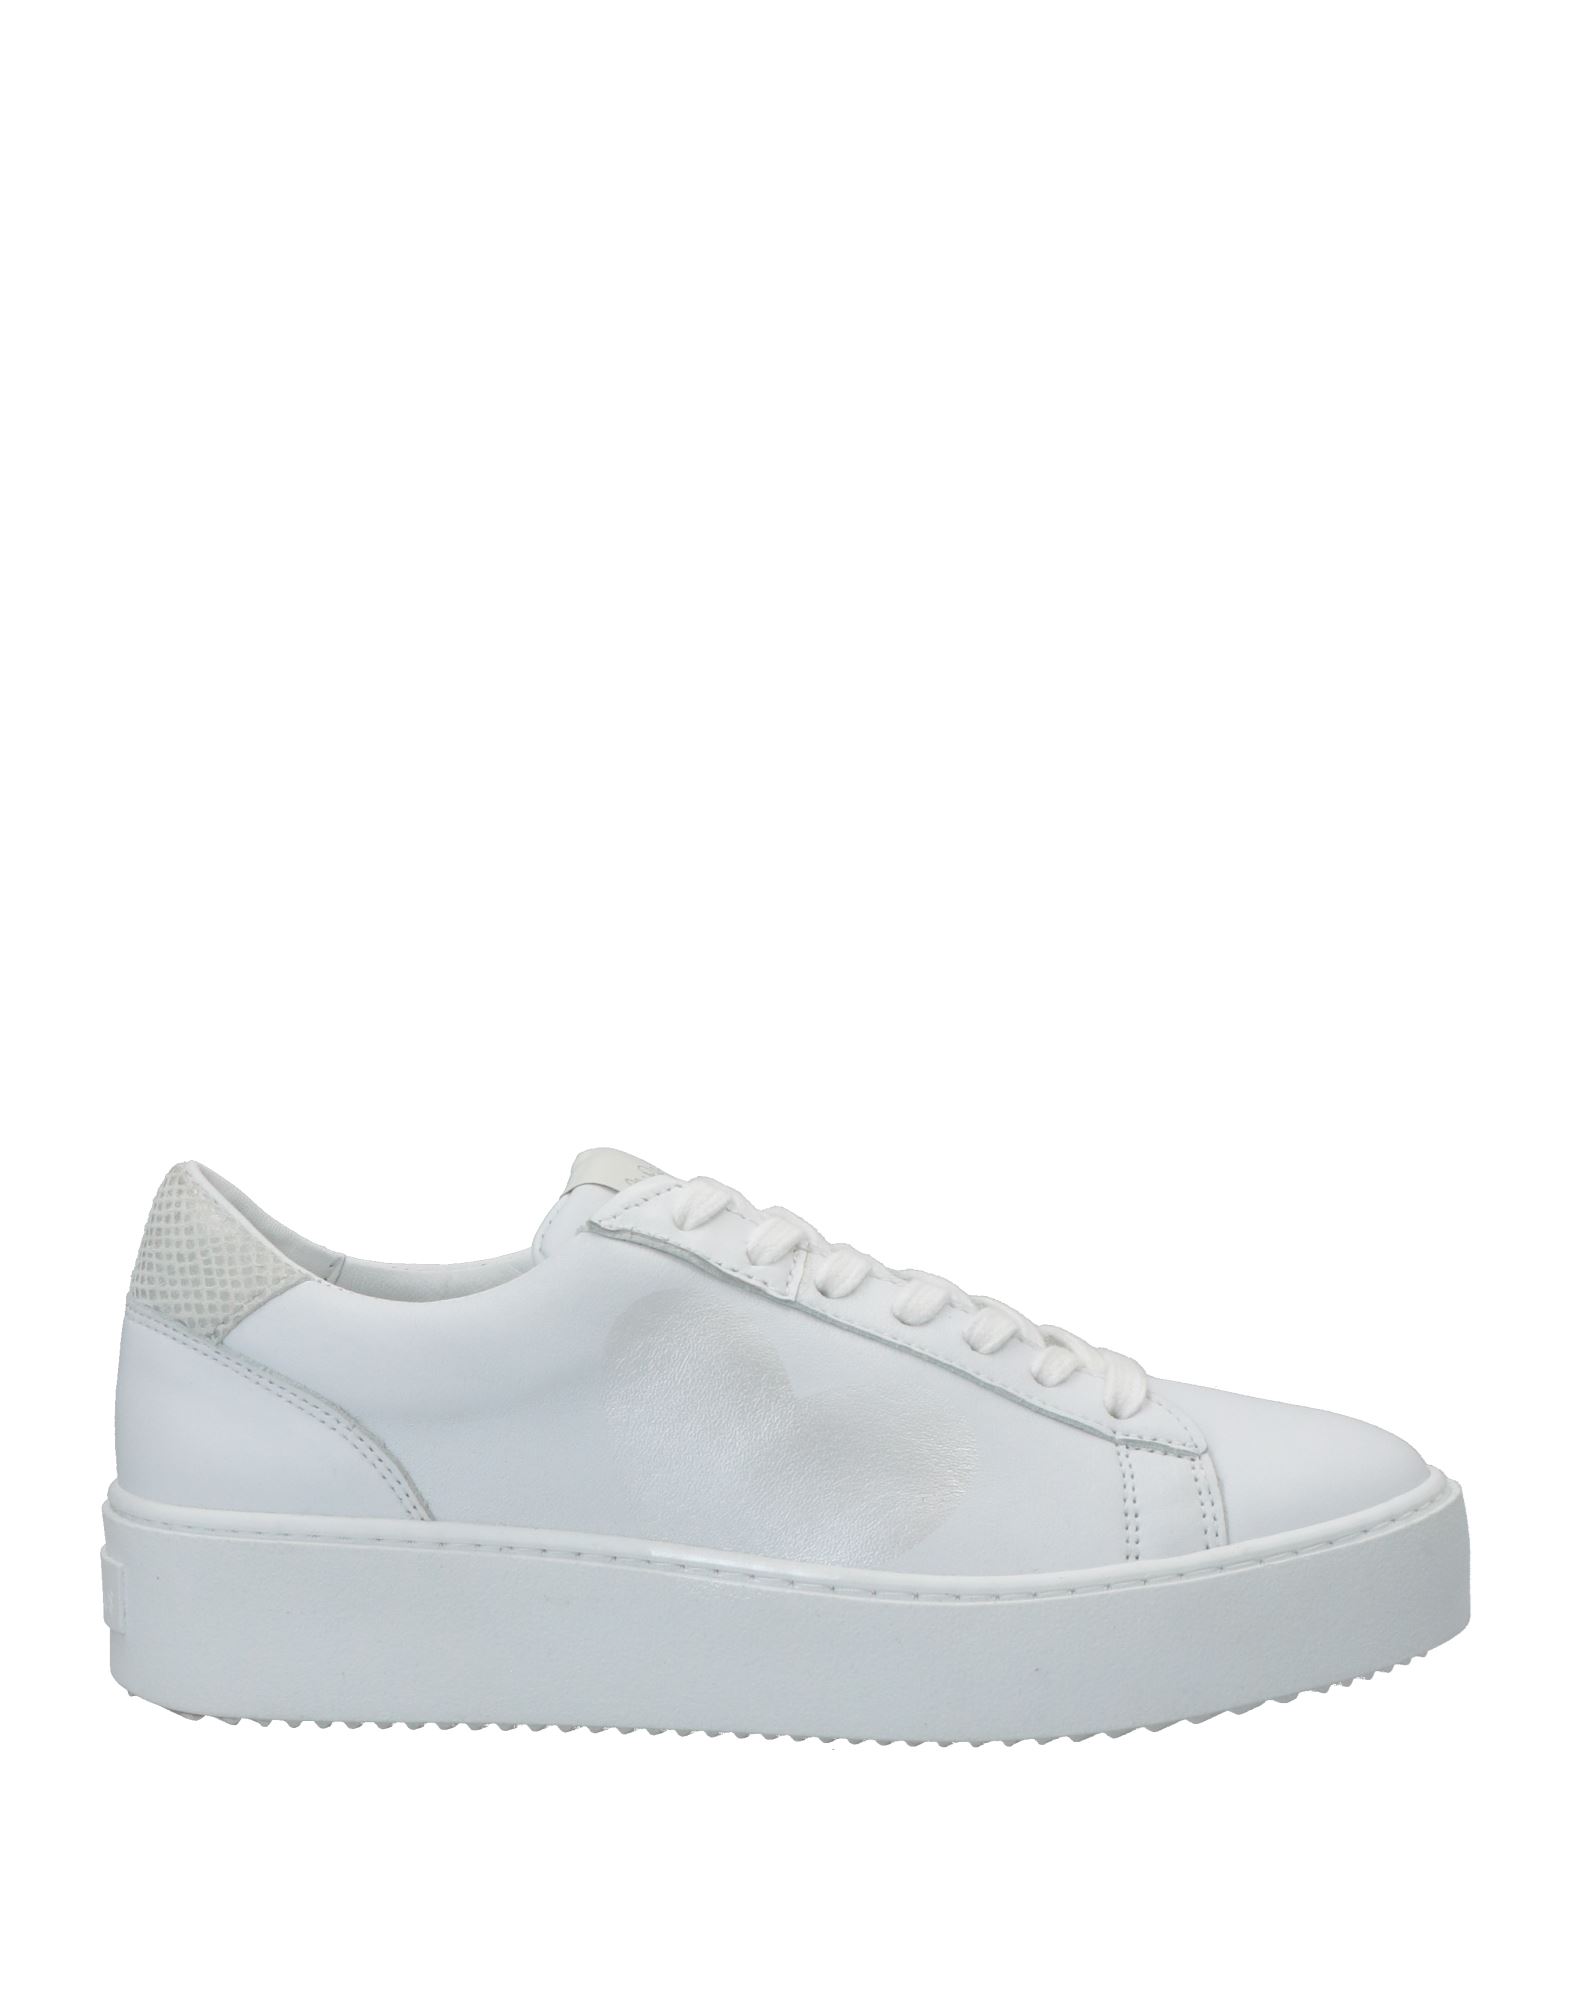 Nira Rubens Sneakers In White | ModeSens